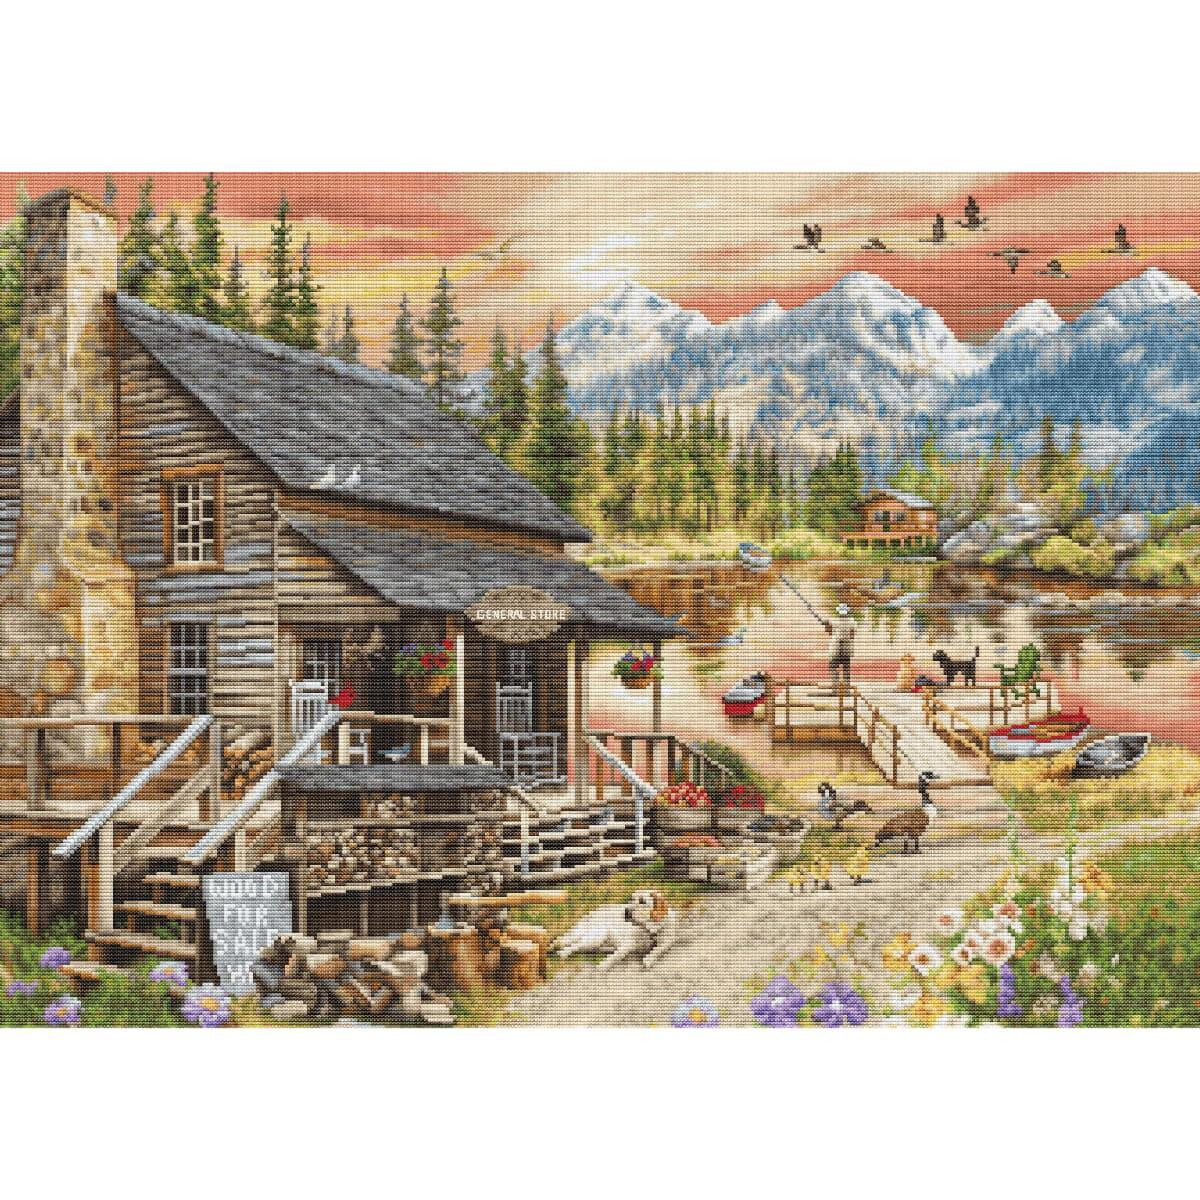 Eine malerische Szene einer rustikalen Holzhütte mit...